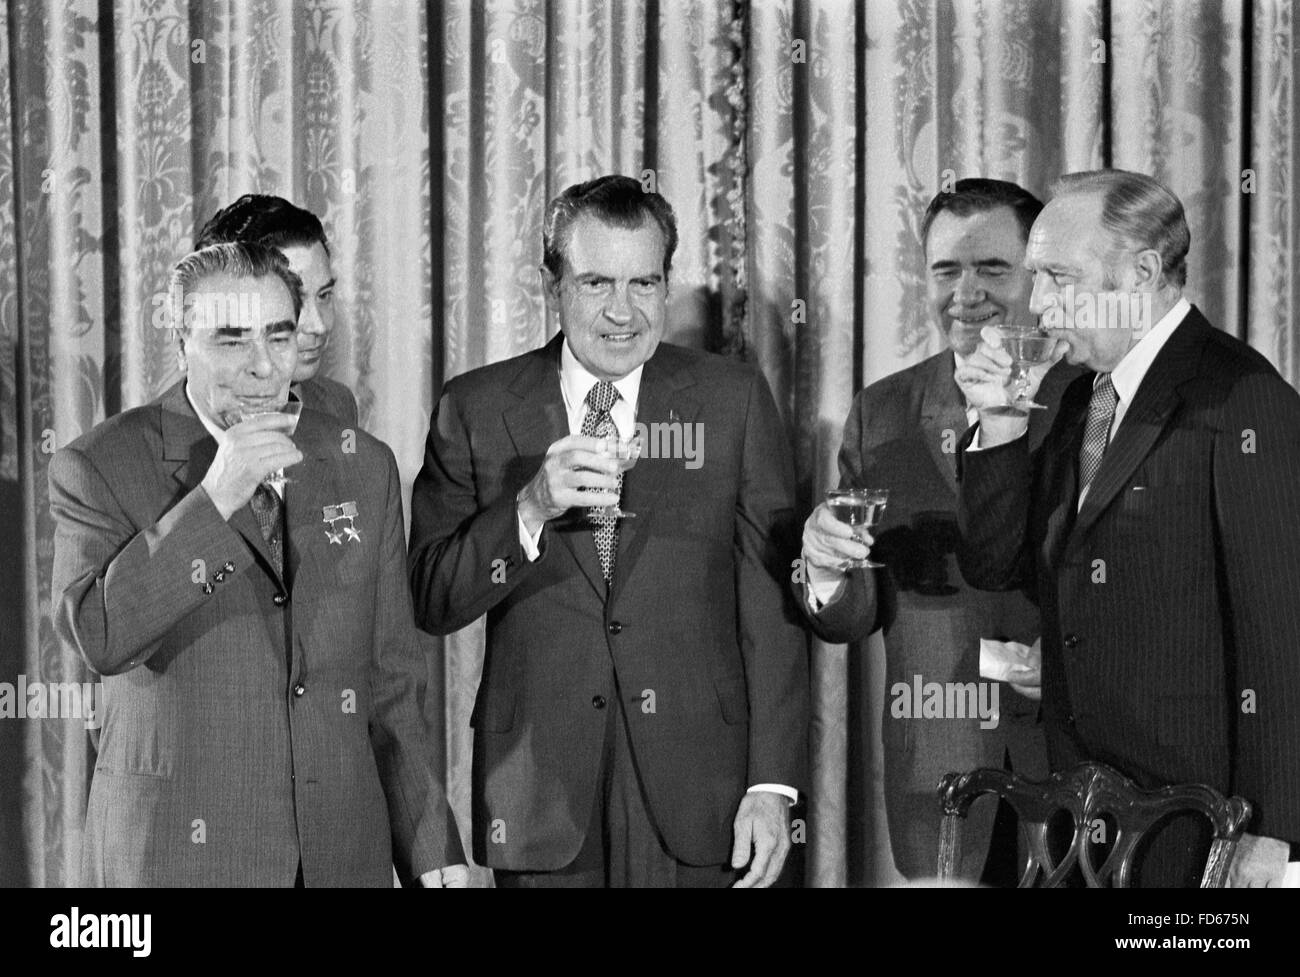 Nixon e Breshnev. Il presidente Richard Nixon con (da sinistra a destra) leader sovietico Leonid Brezhnev, sovietico il Ministro degli Affari esteri Andrei Gromyko, e il Segretario di Stato William P. Rogers, 19 giugno 1973 Foto Stock